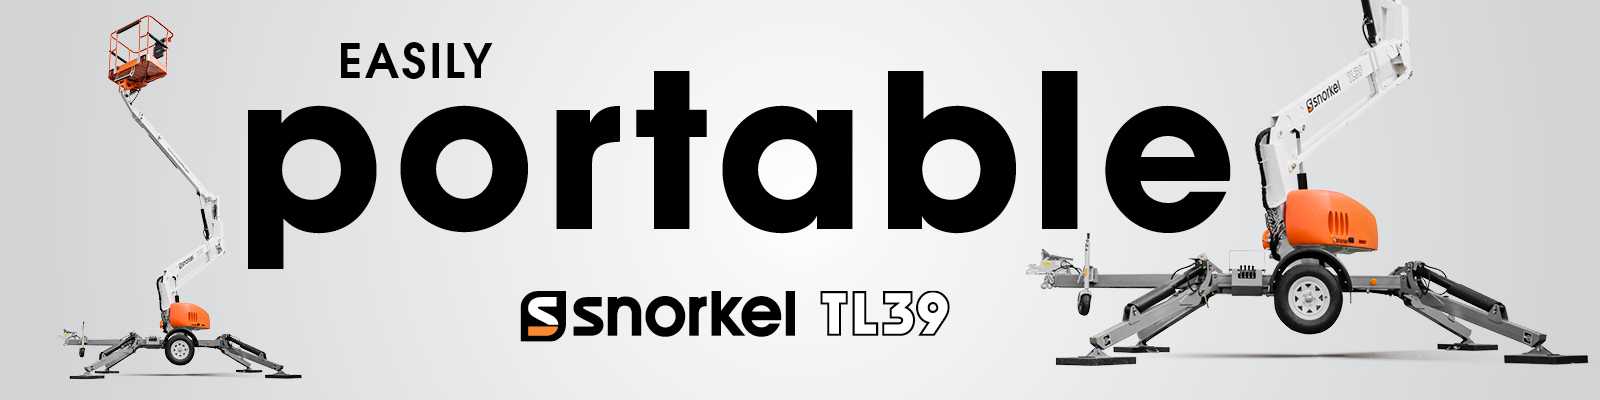 Snorkel TL39 towable boom lift